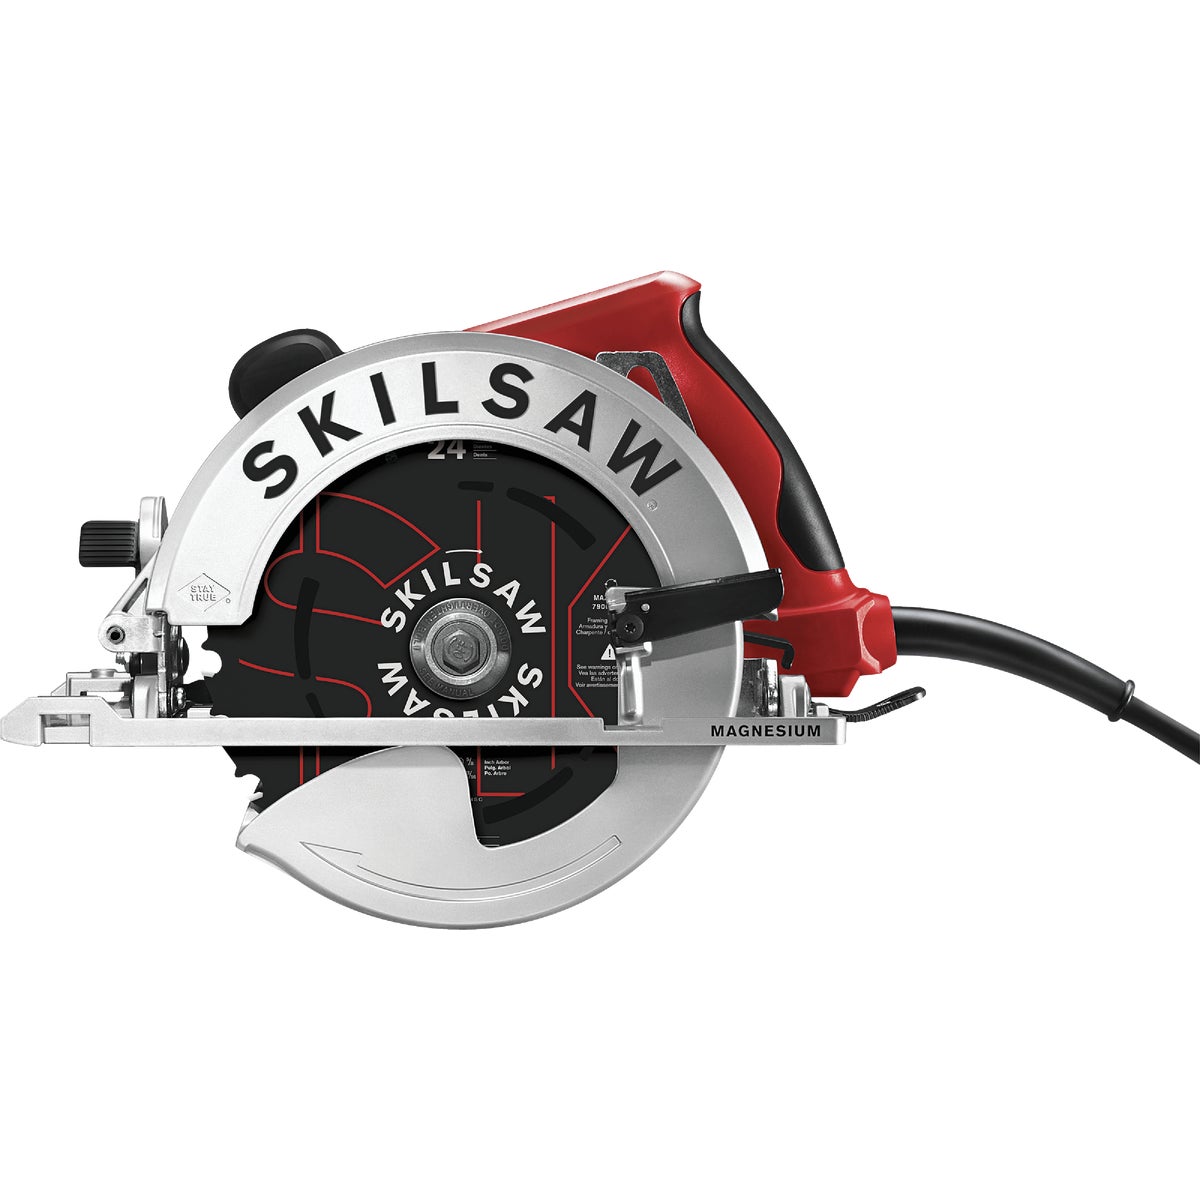 SKILSAW Southpaw Sidewinder 7-1/4 In. 15-Amp Circular Saw